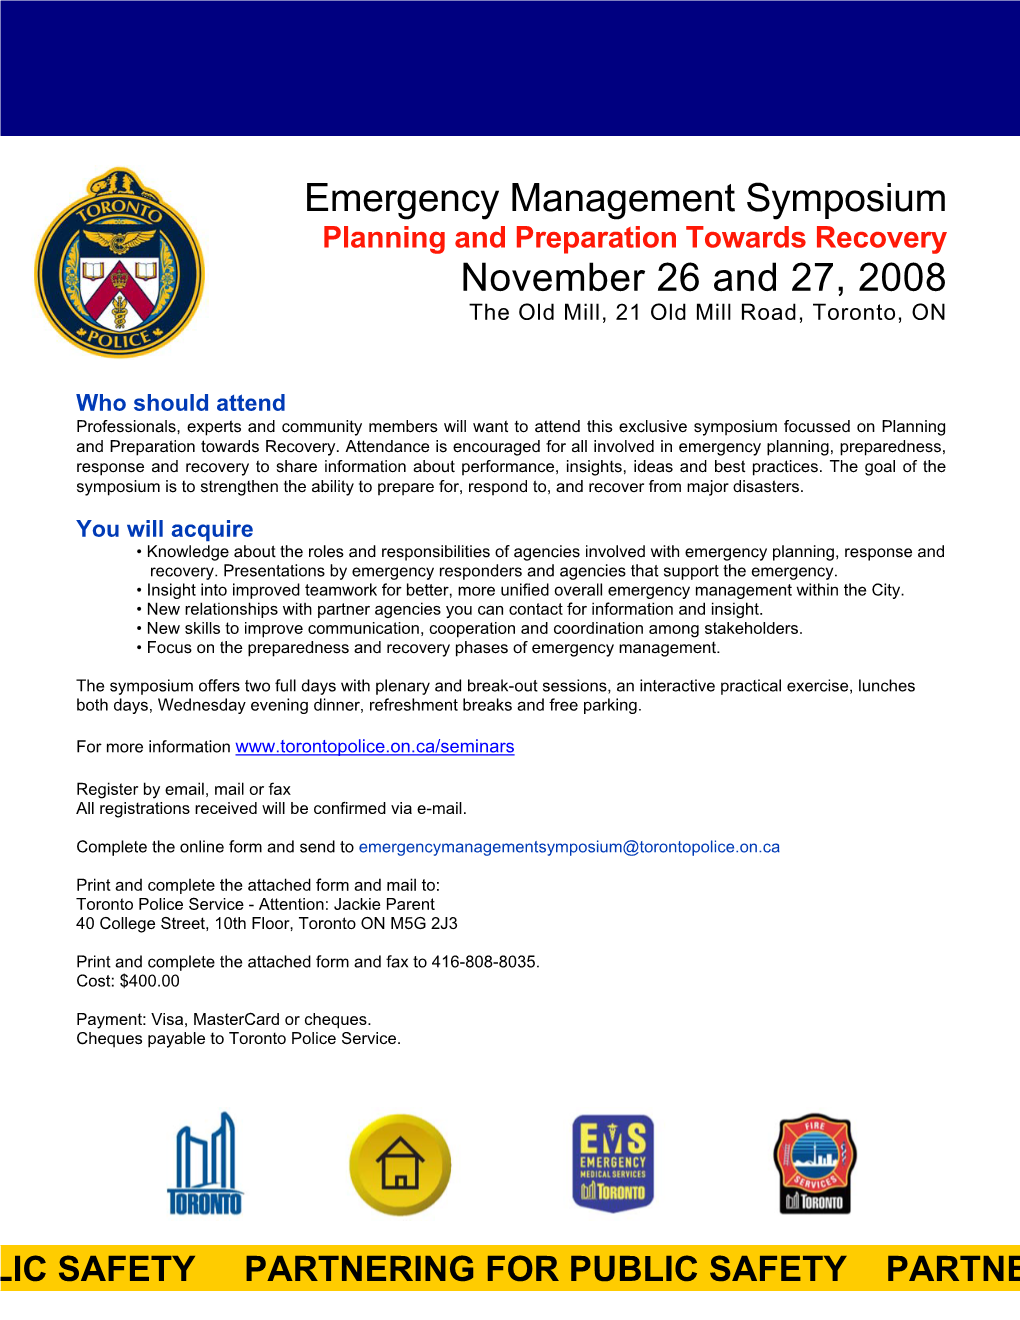 Emergency Management Symposium November